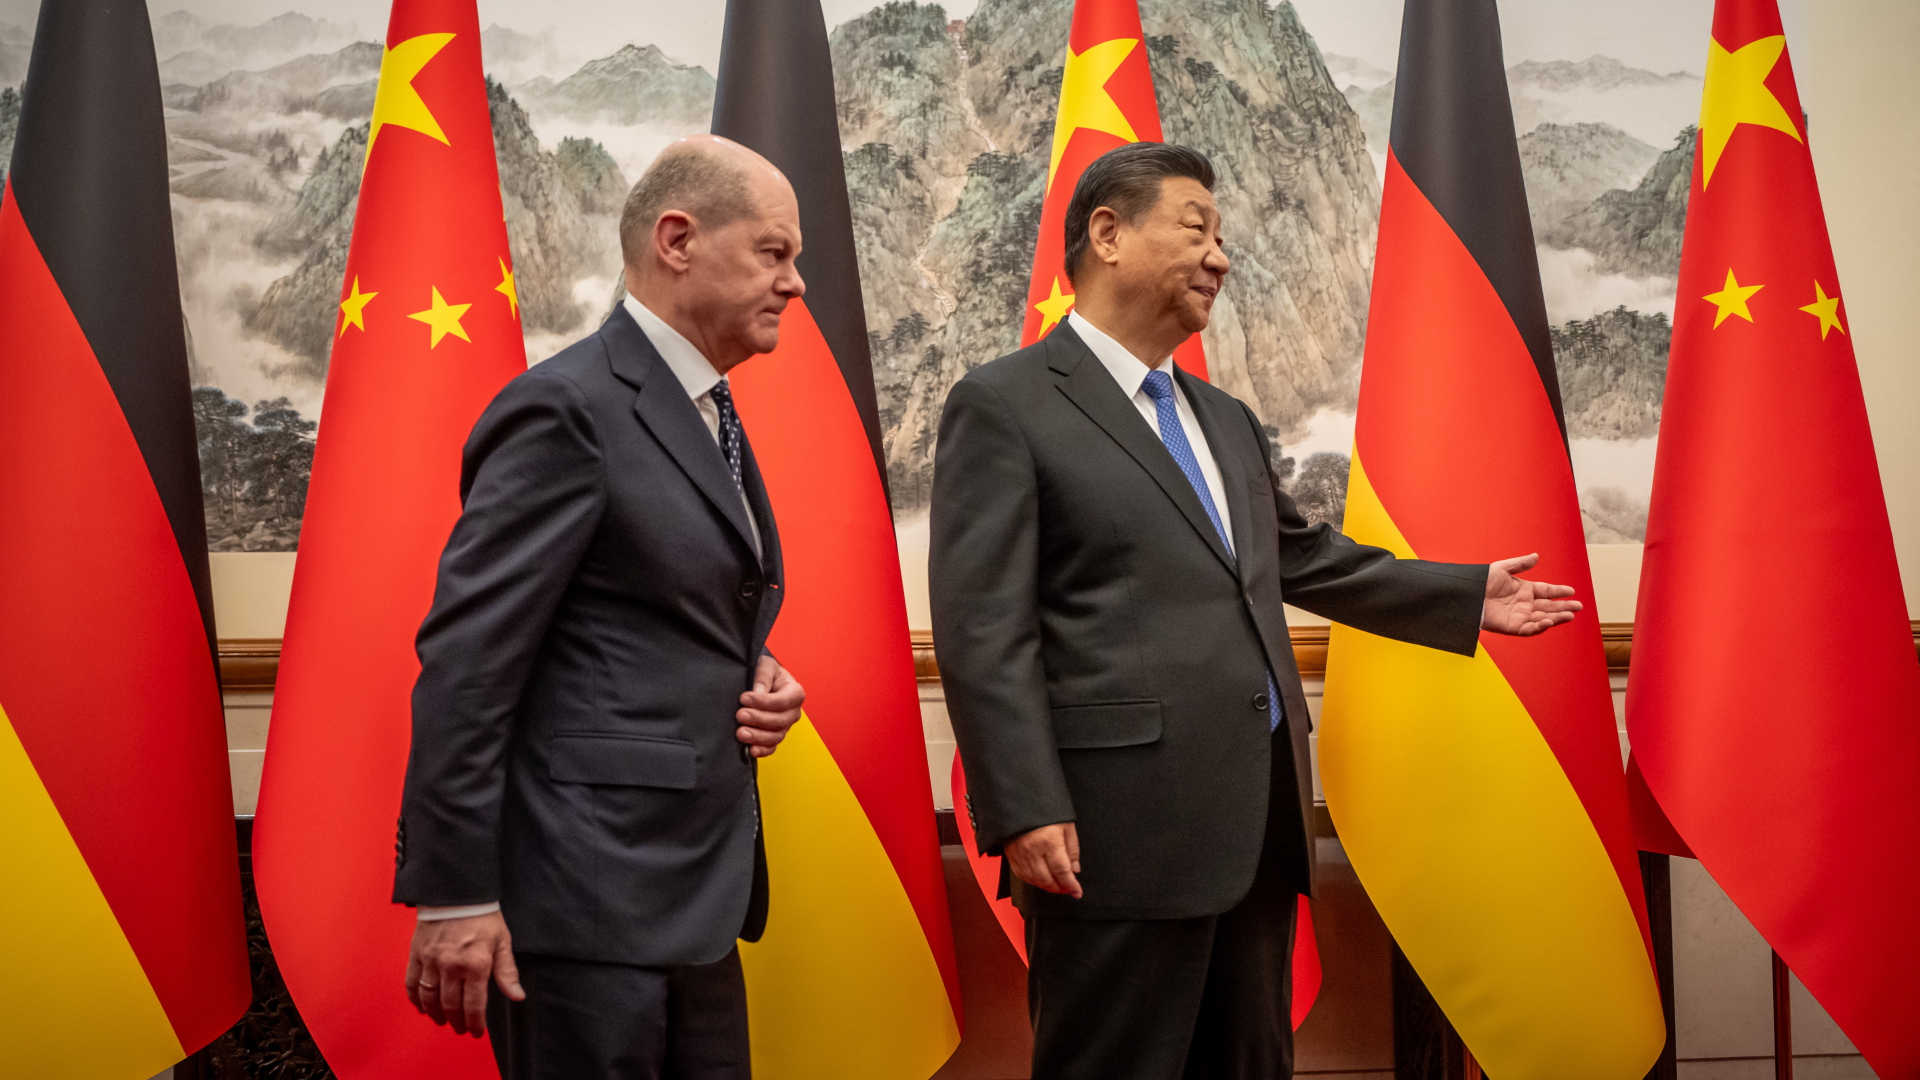 Kanzler Scholz und Chinas Präsident Xi